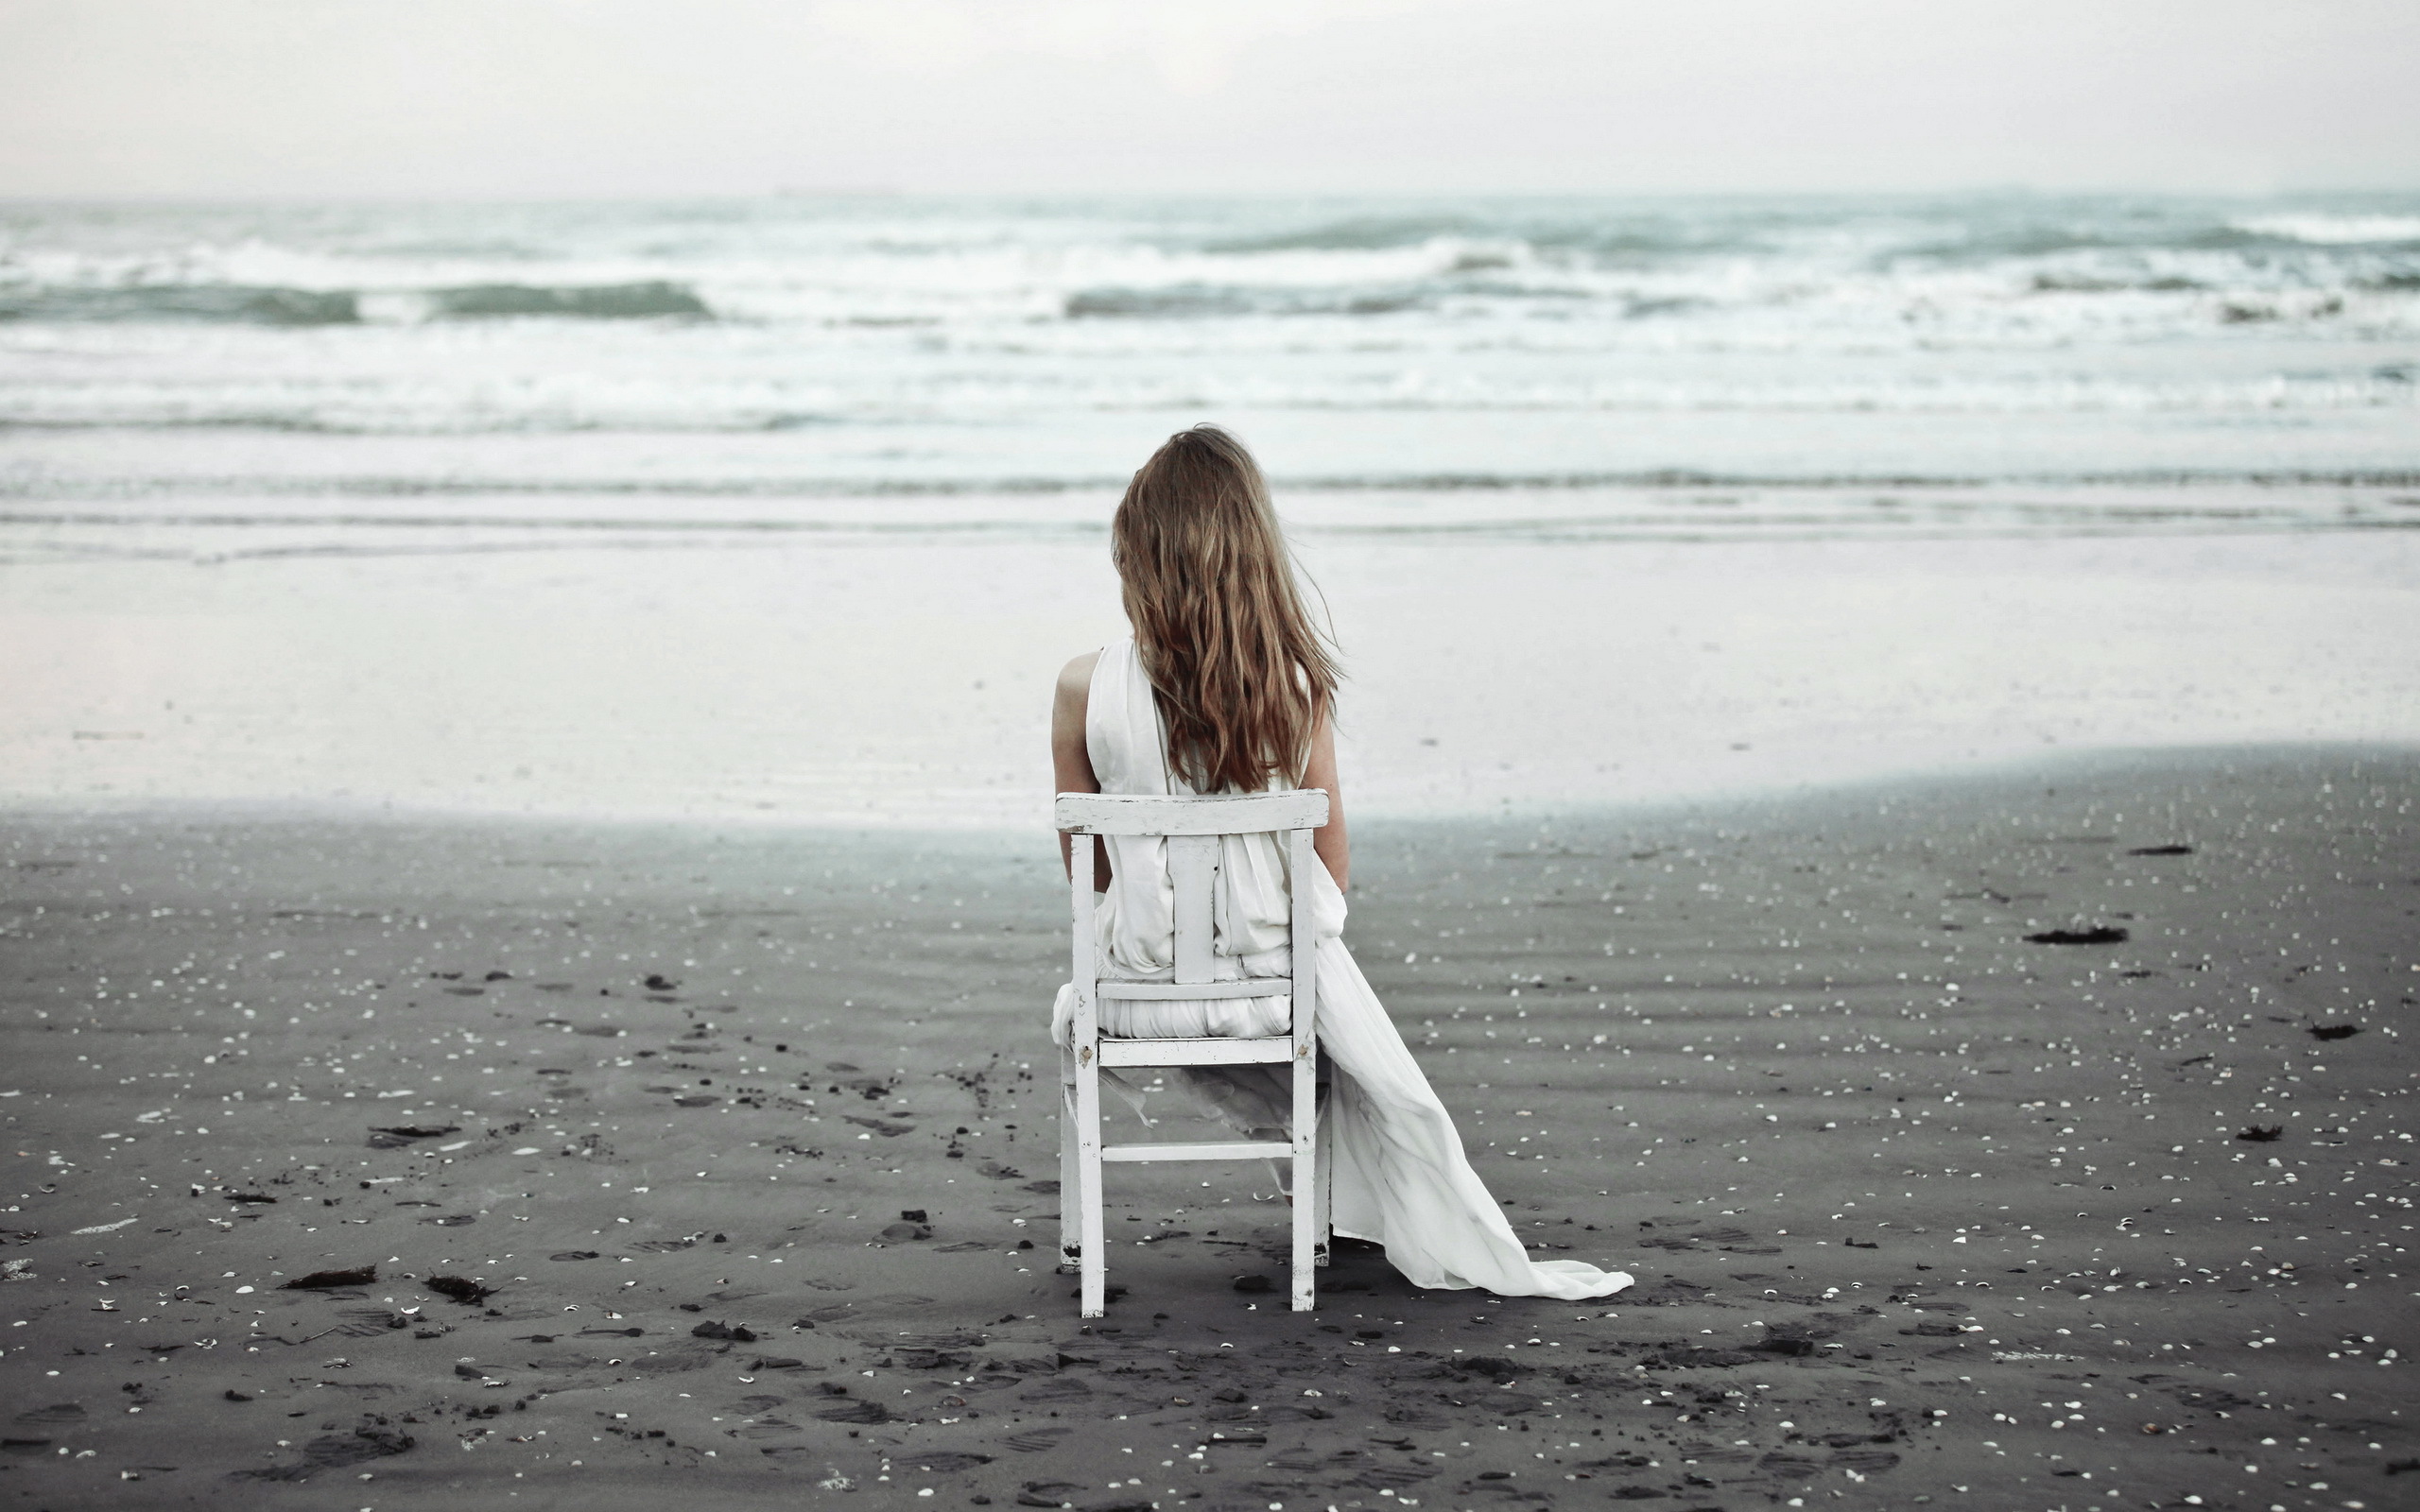 Любящий одиночество. Море одиночество. Одинокая девушка. Девушка сидит у моря. Это одиночество.